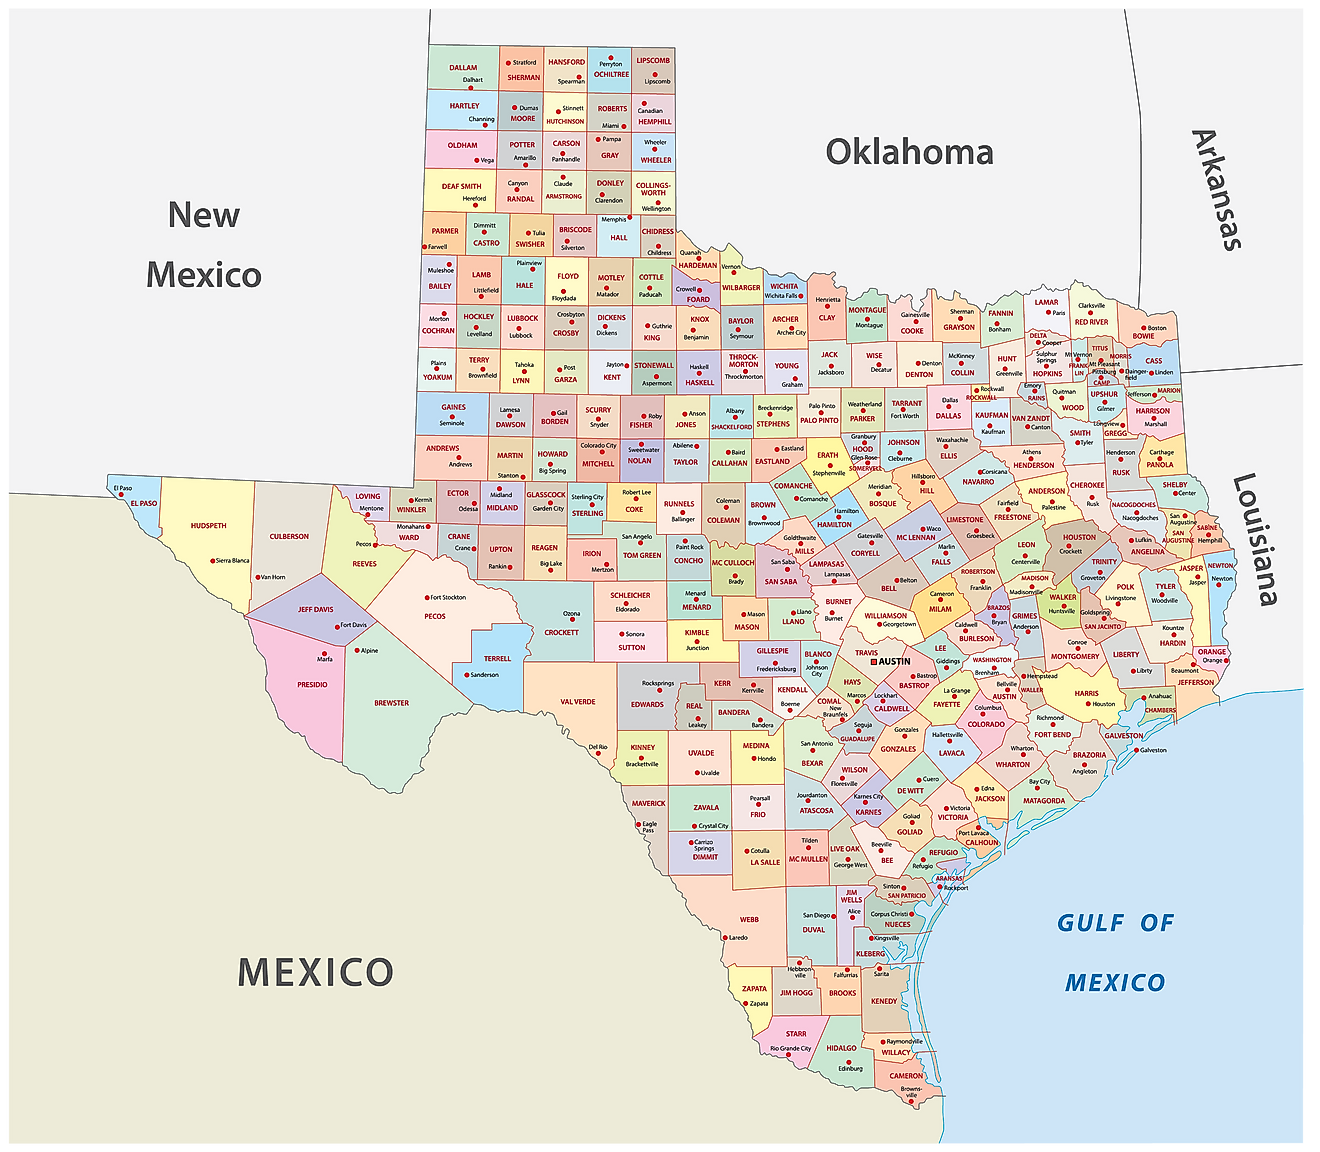 Mapa administrativo de Texas que muestra sus 254 condados y la ciudad capital - Austin